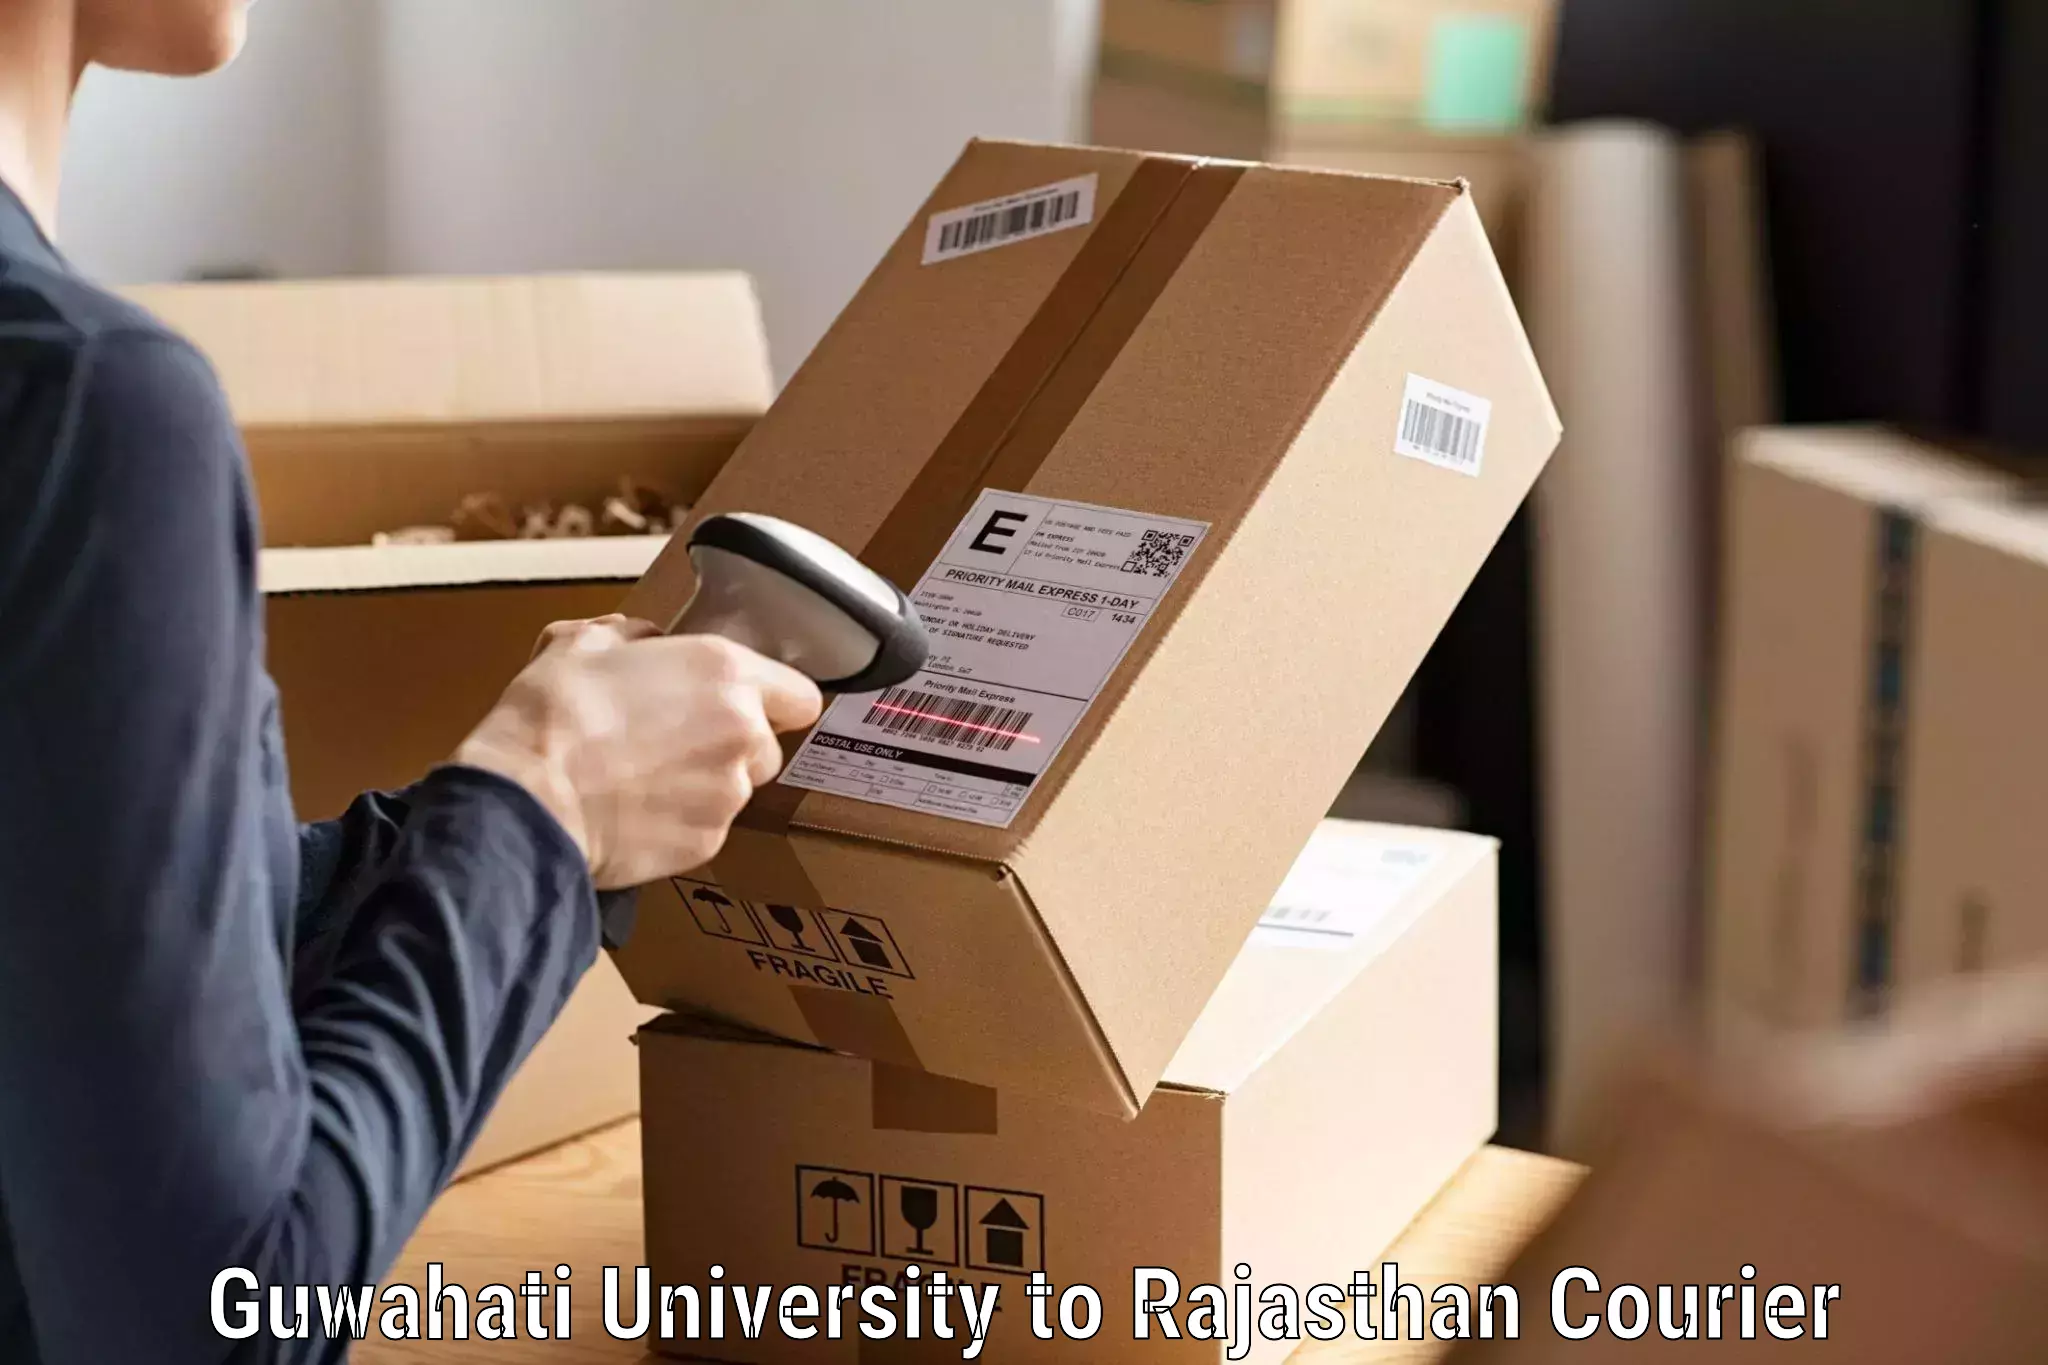 Quick courier services Guwahati University to Viratnagar